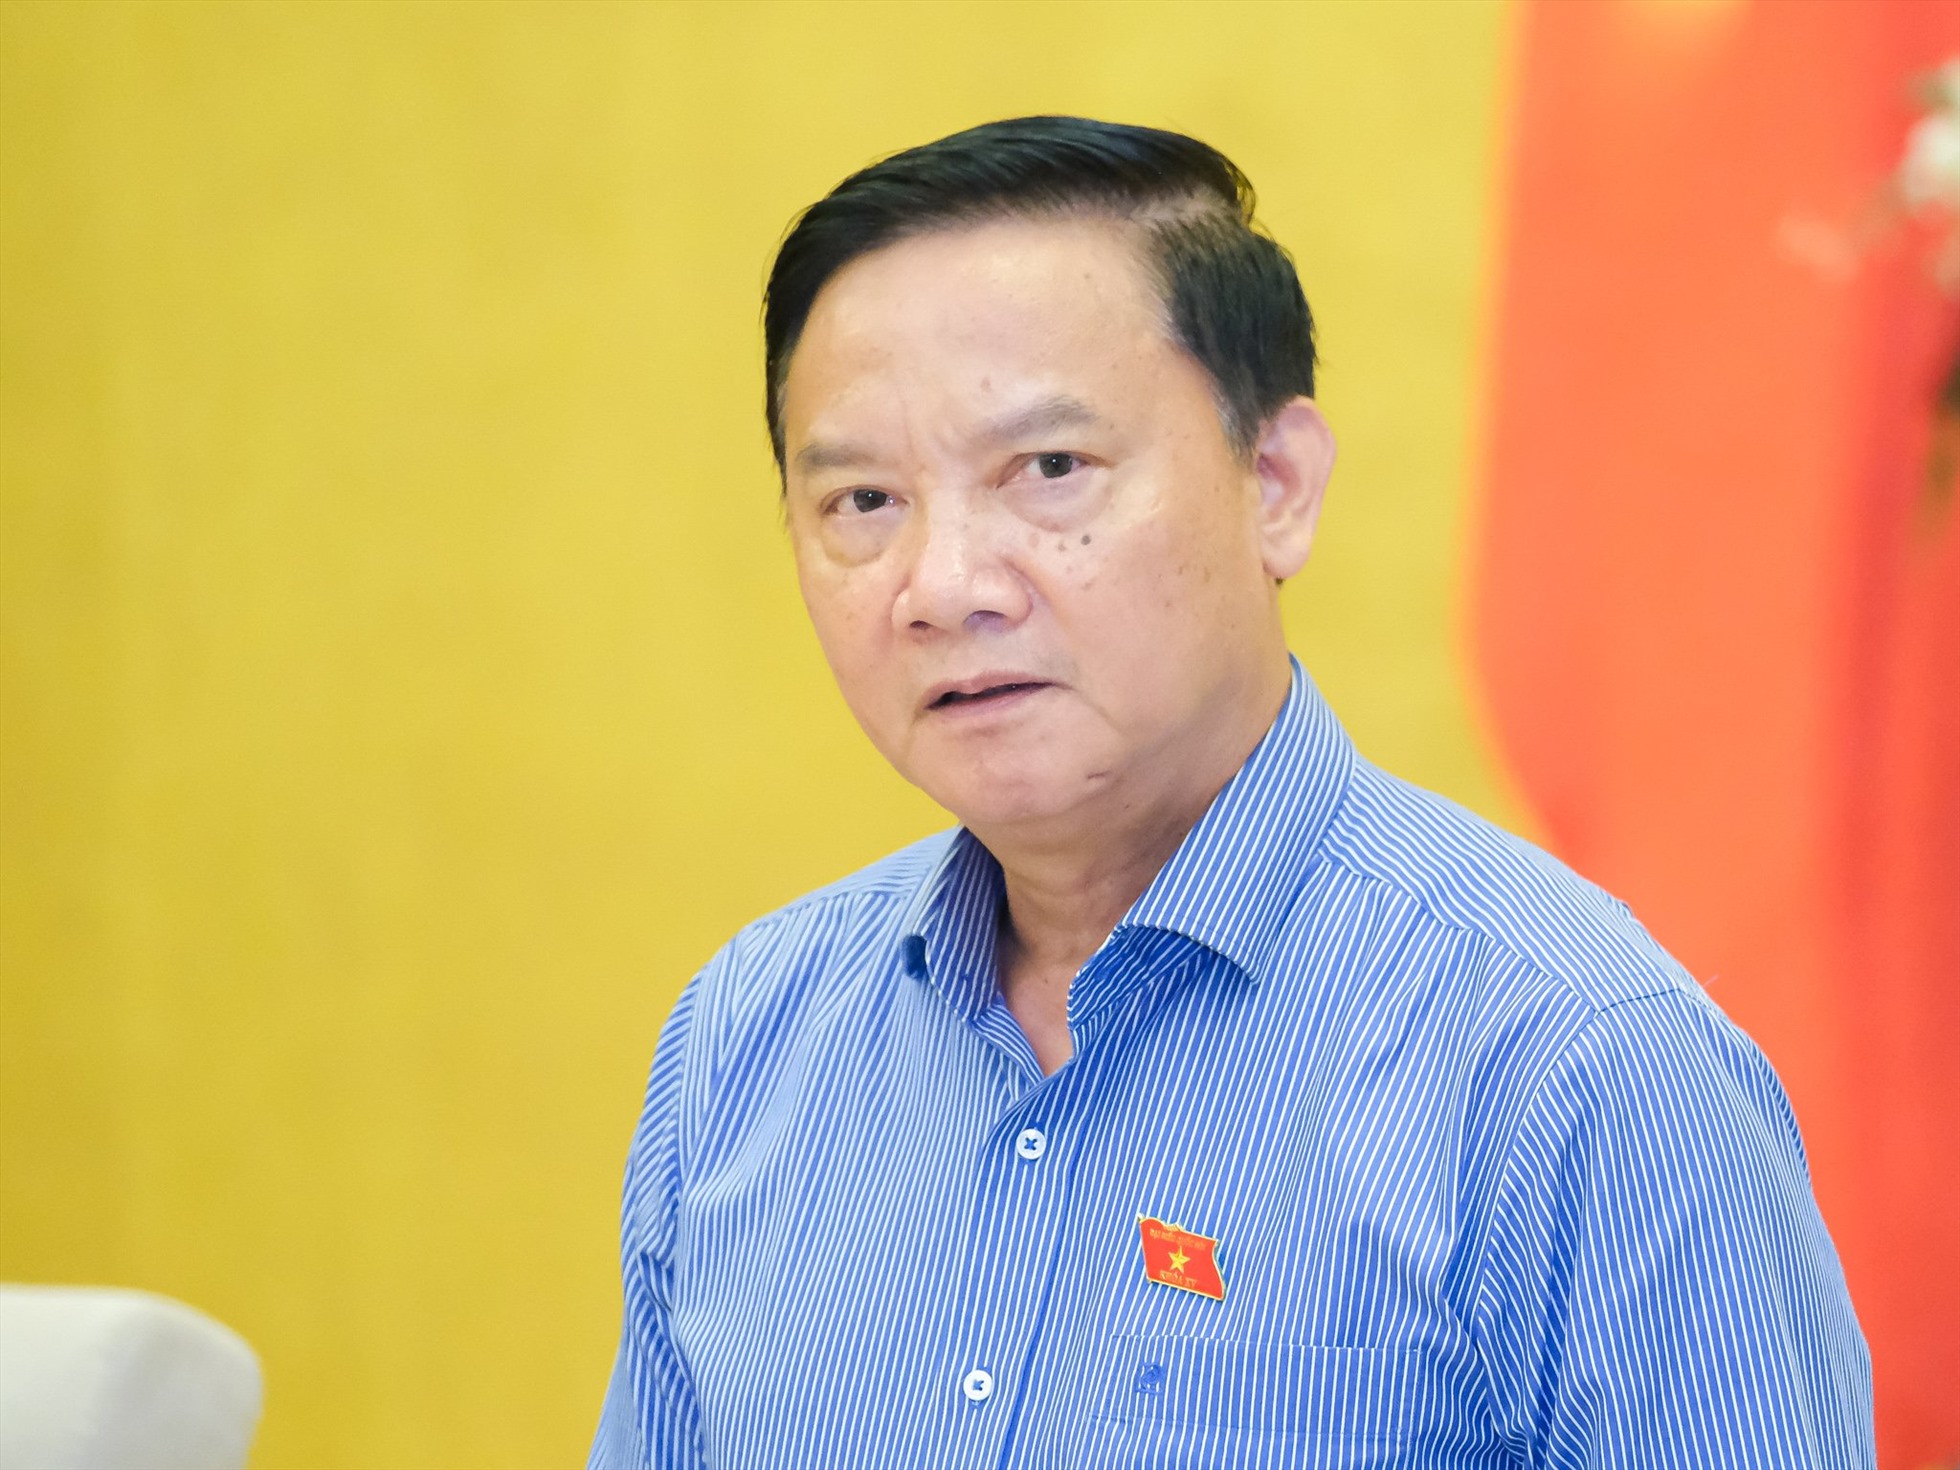 Phó Chủ tịch Quốc hội Nguyễn Khắc Định.